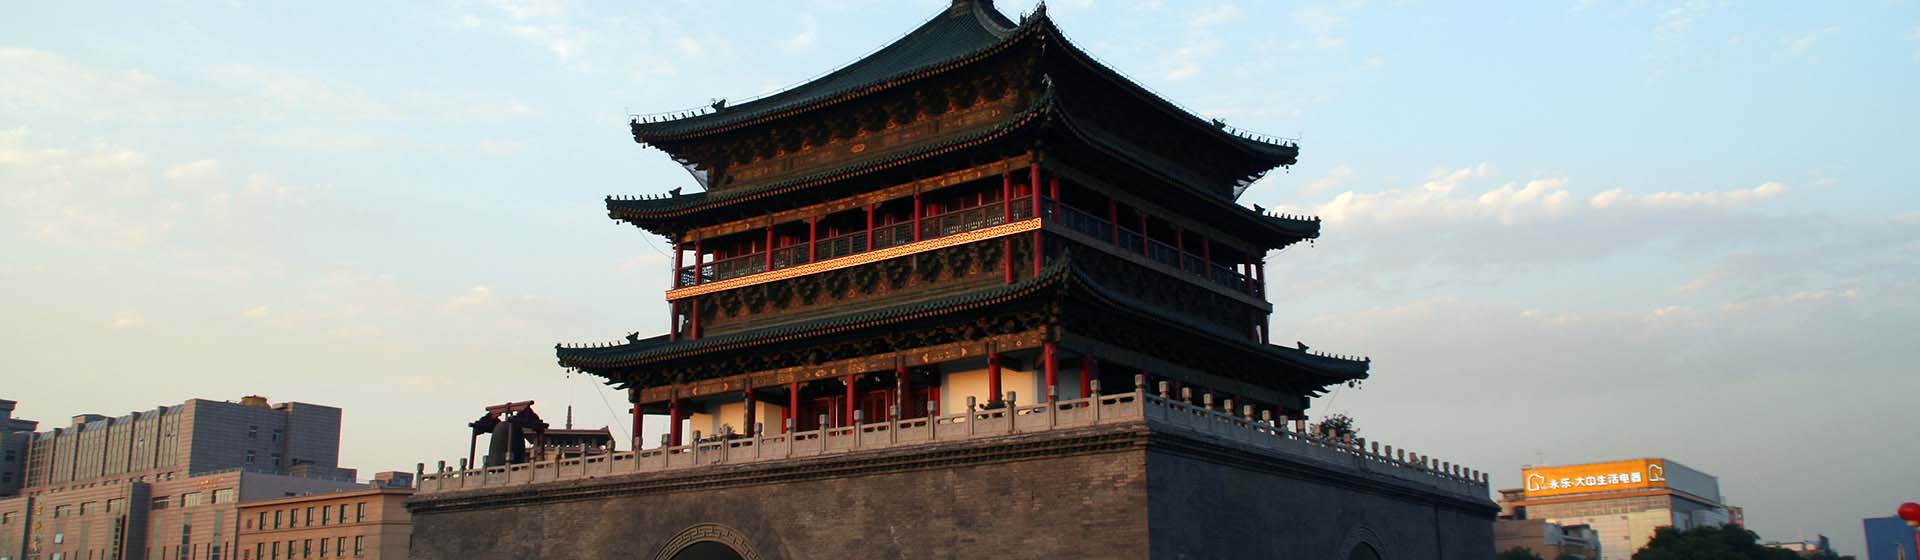 Beijing City Tours